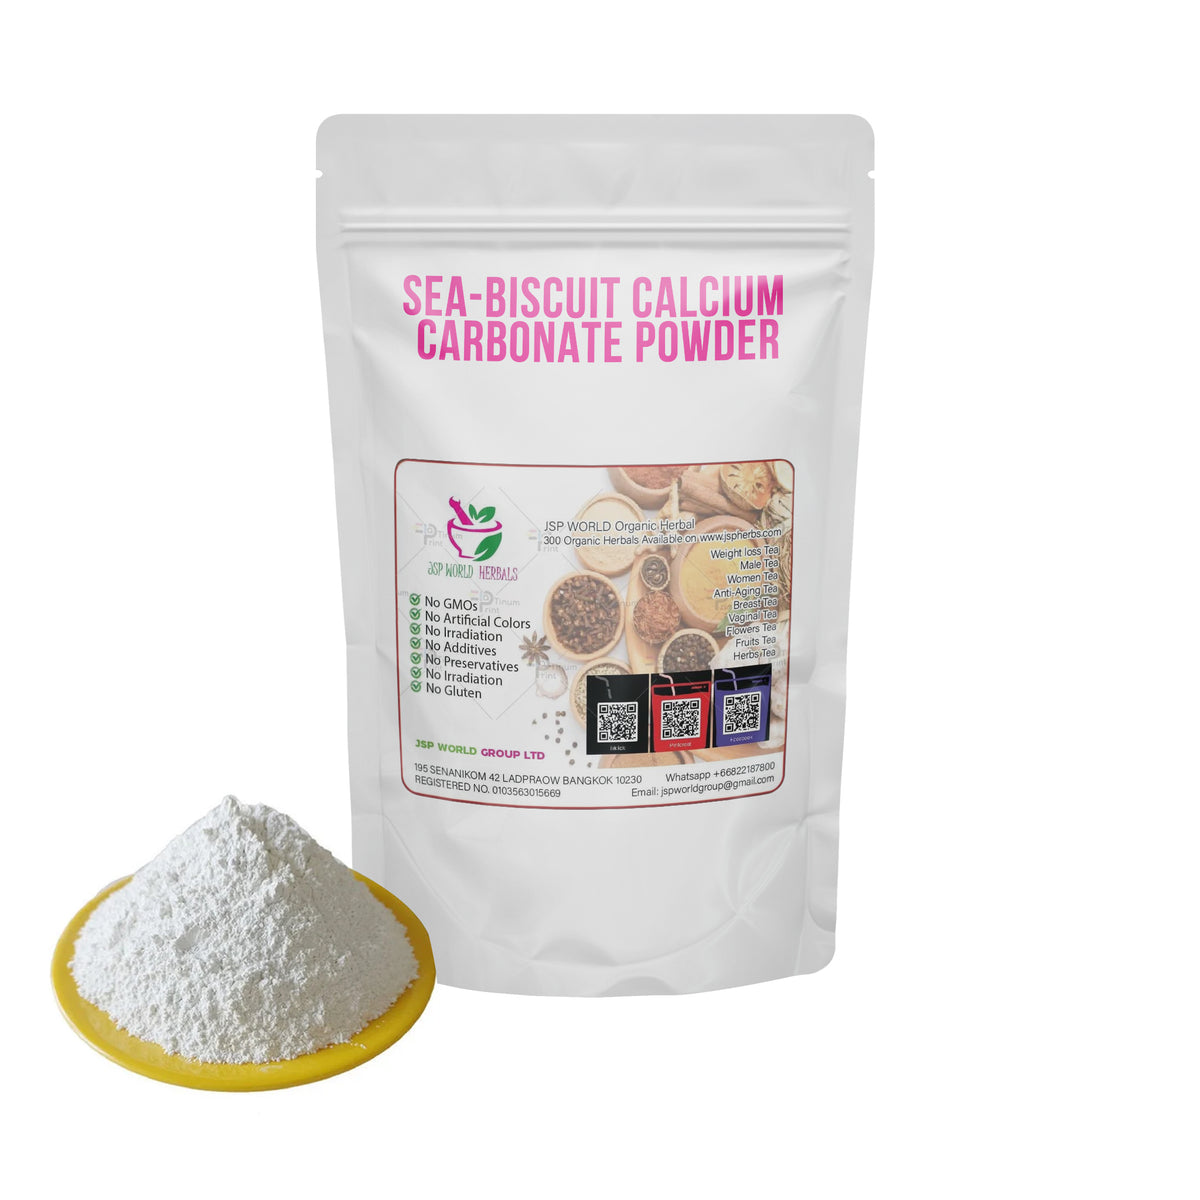 Sea-biscuit Calcium Carbonate Powder 100 Grams 100% Organic Authenic